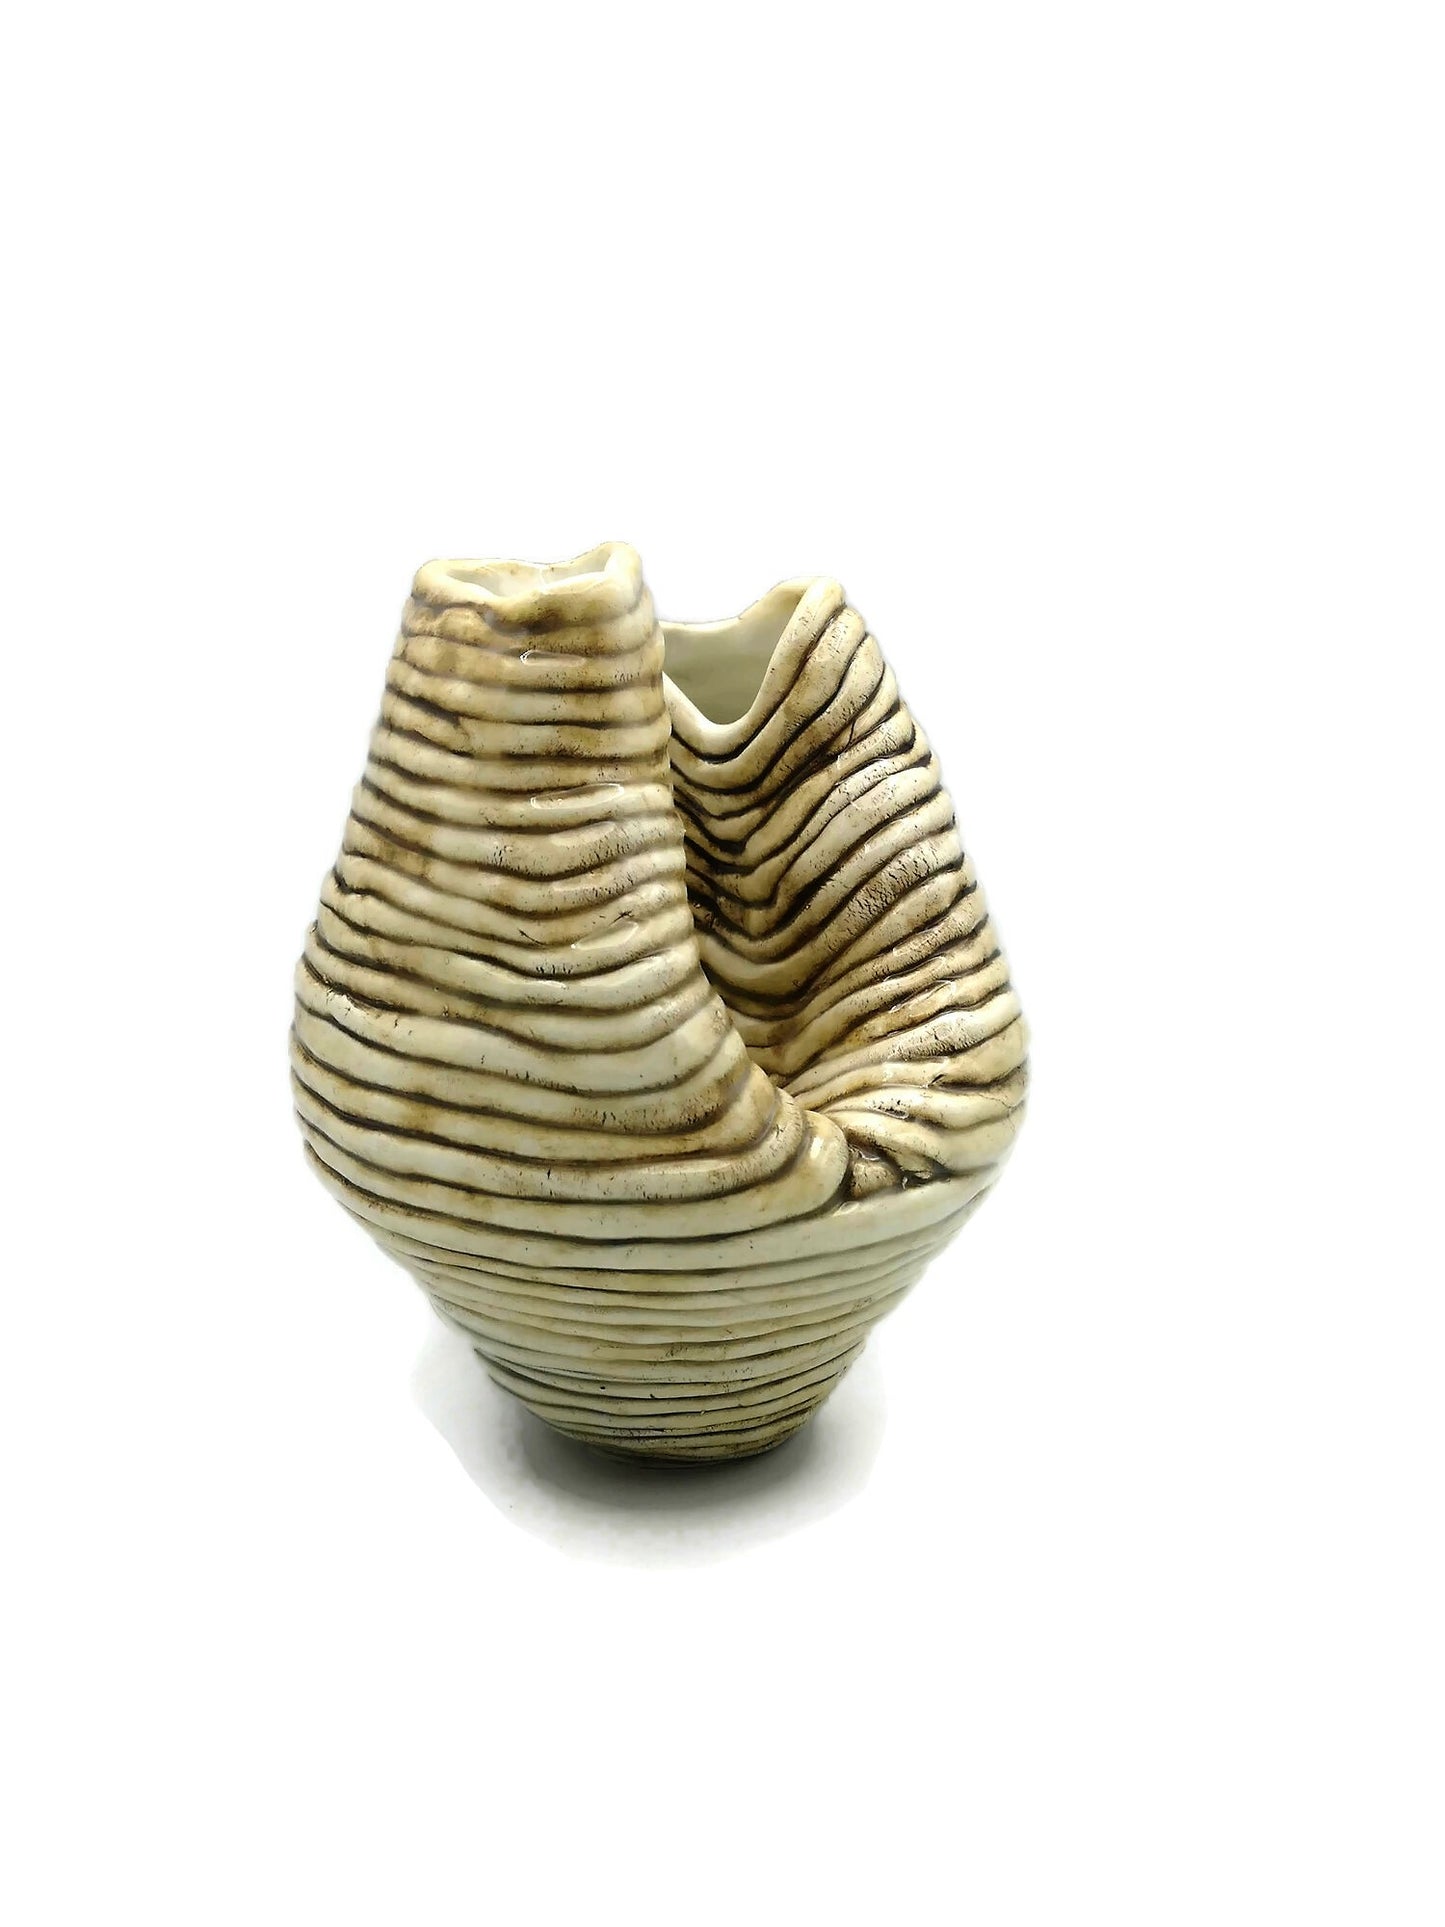 Sculptural Handmade Ceramic Vase, Pottery Vase Irregular Shape, Mom Birthday Gift, Mid Century Modern Abstract Sculpture Vessel - Ceramica Ana Rafael